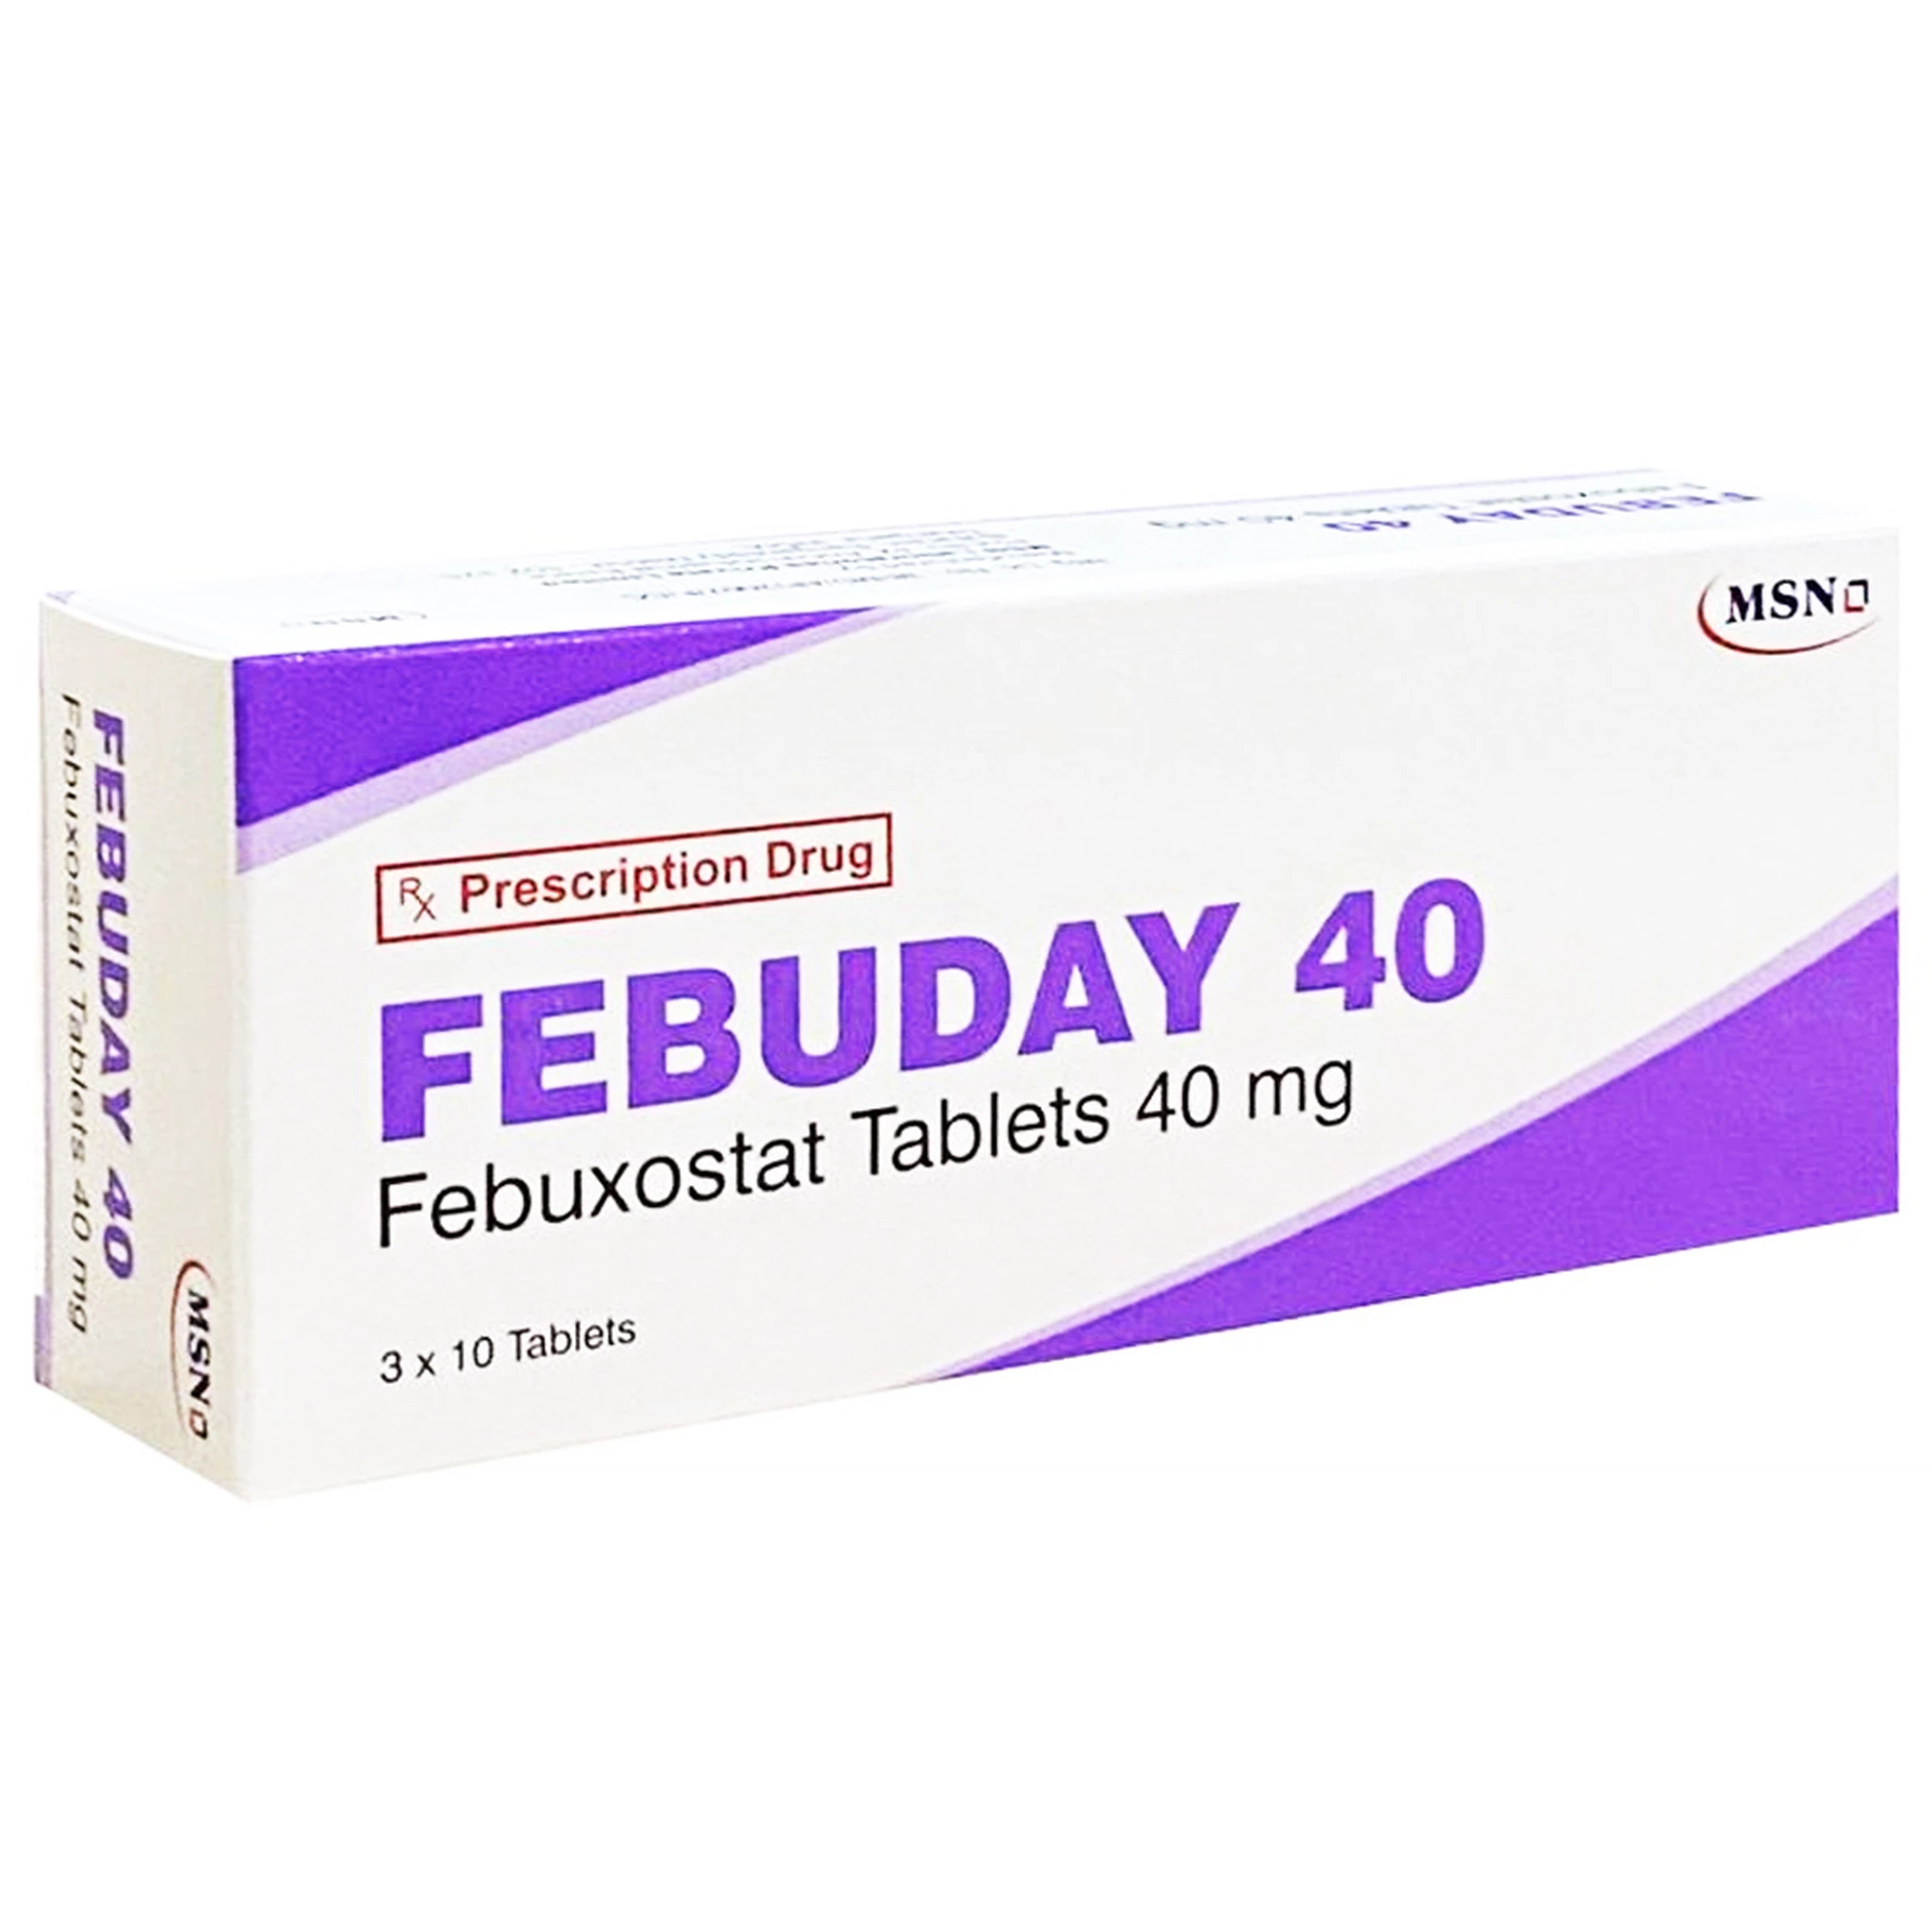 Thuốc Febuday 40 MSN điều trị tăng acid uric huyết (3 vỉ x 10 viên)